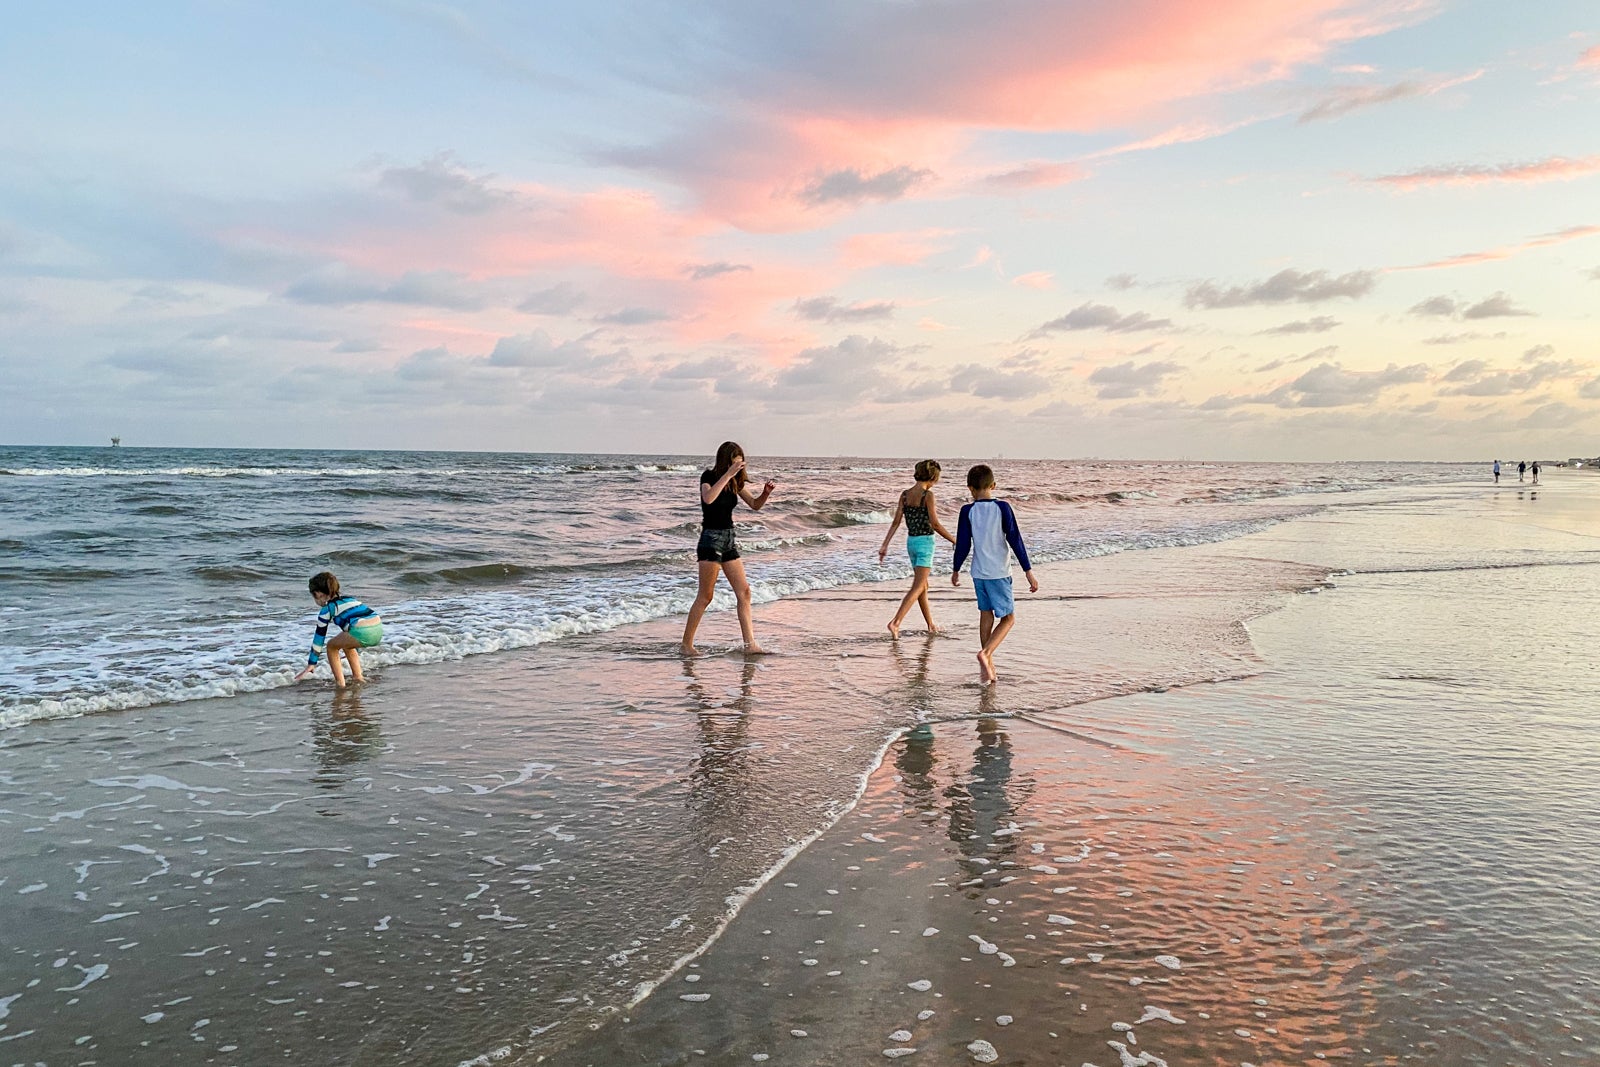 A family walks on a beach